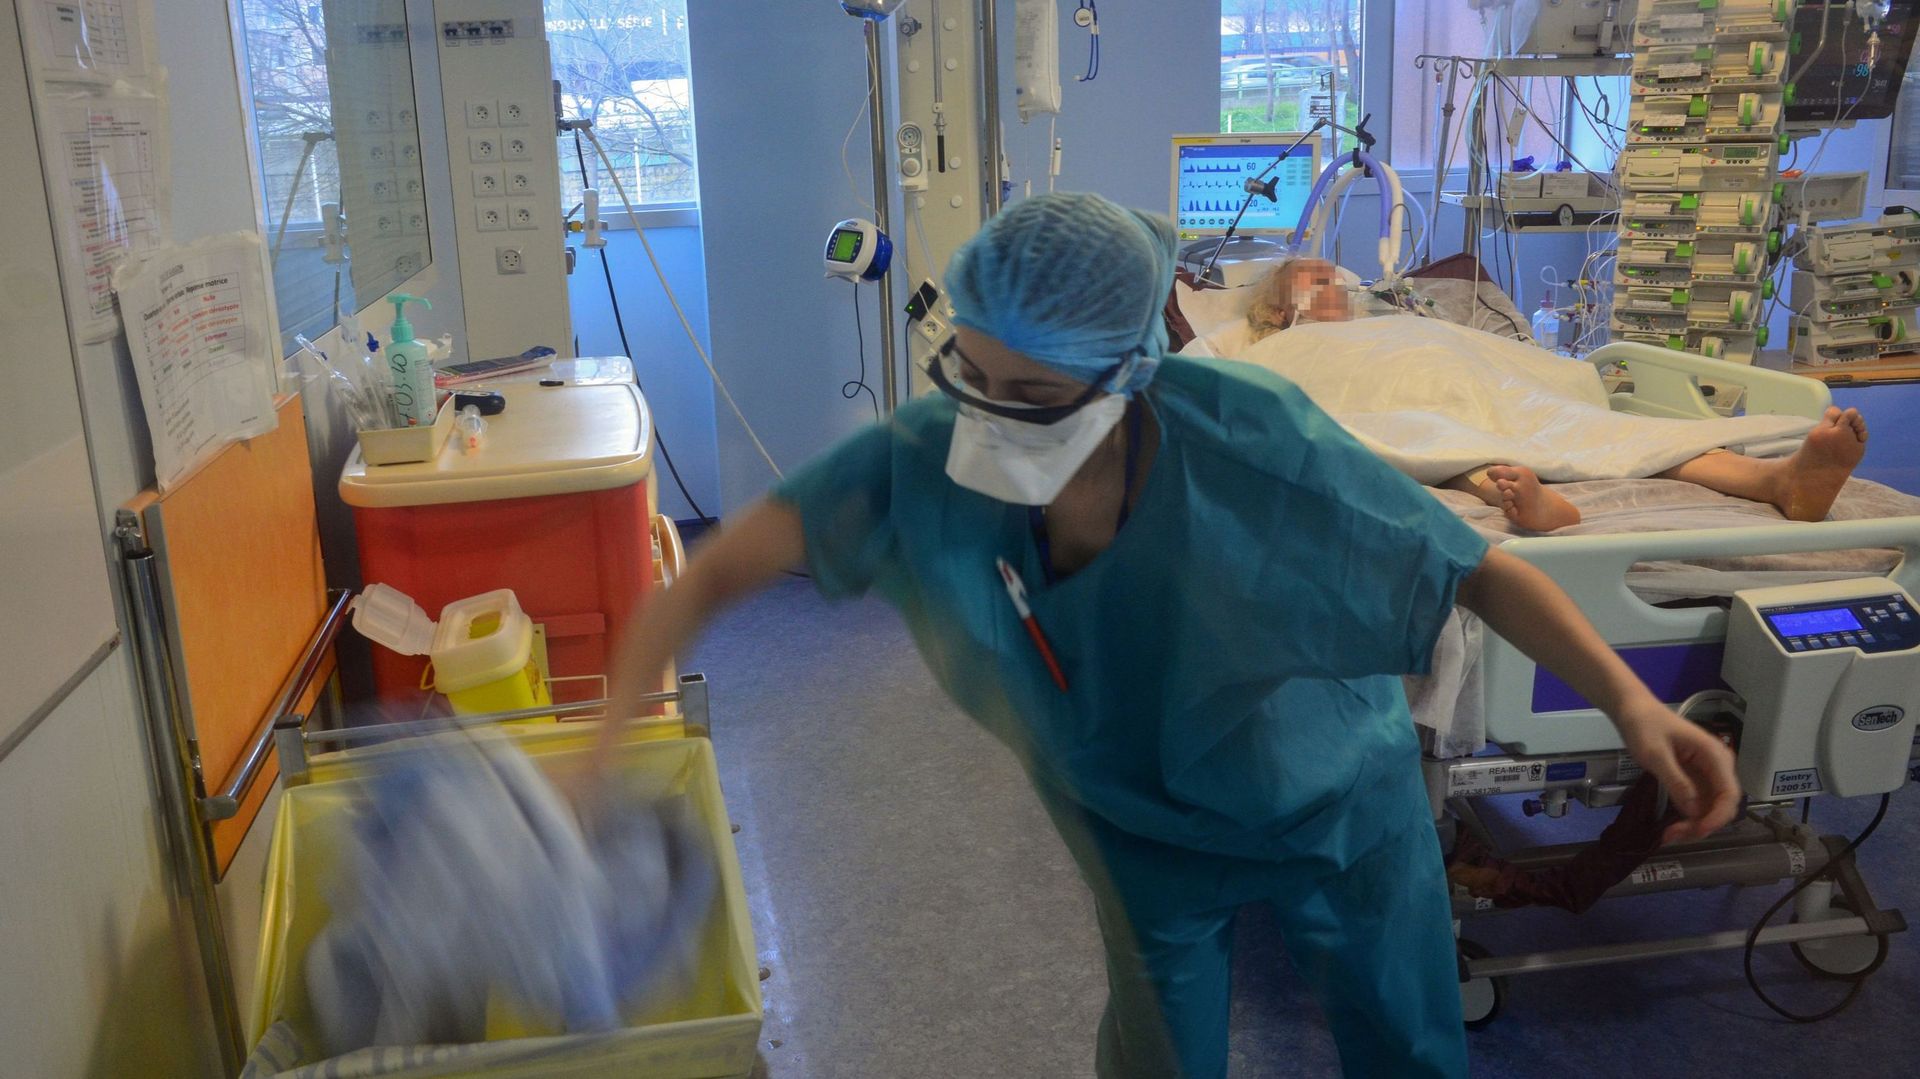 Une infirmière met ses vêtements de protection dans une poubelle après avoir soigné un patient infecté COVID-19 et confiné aux soins intensifs de l’hôpital Bichat à Paris – 13 mars 2020.